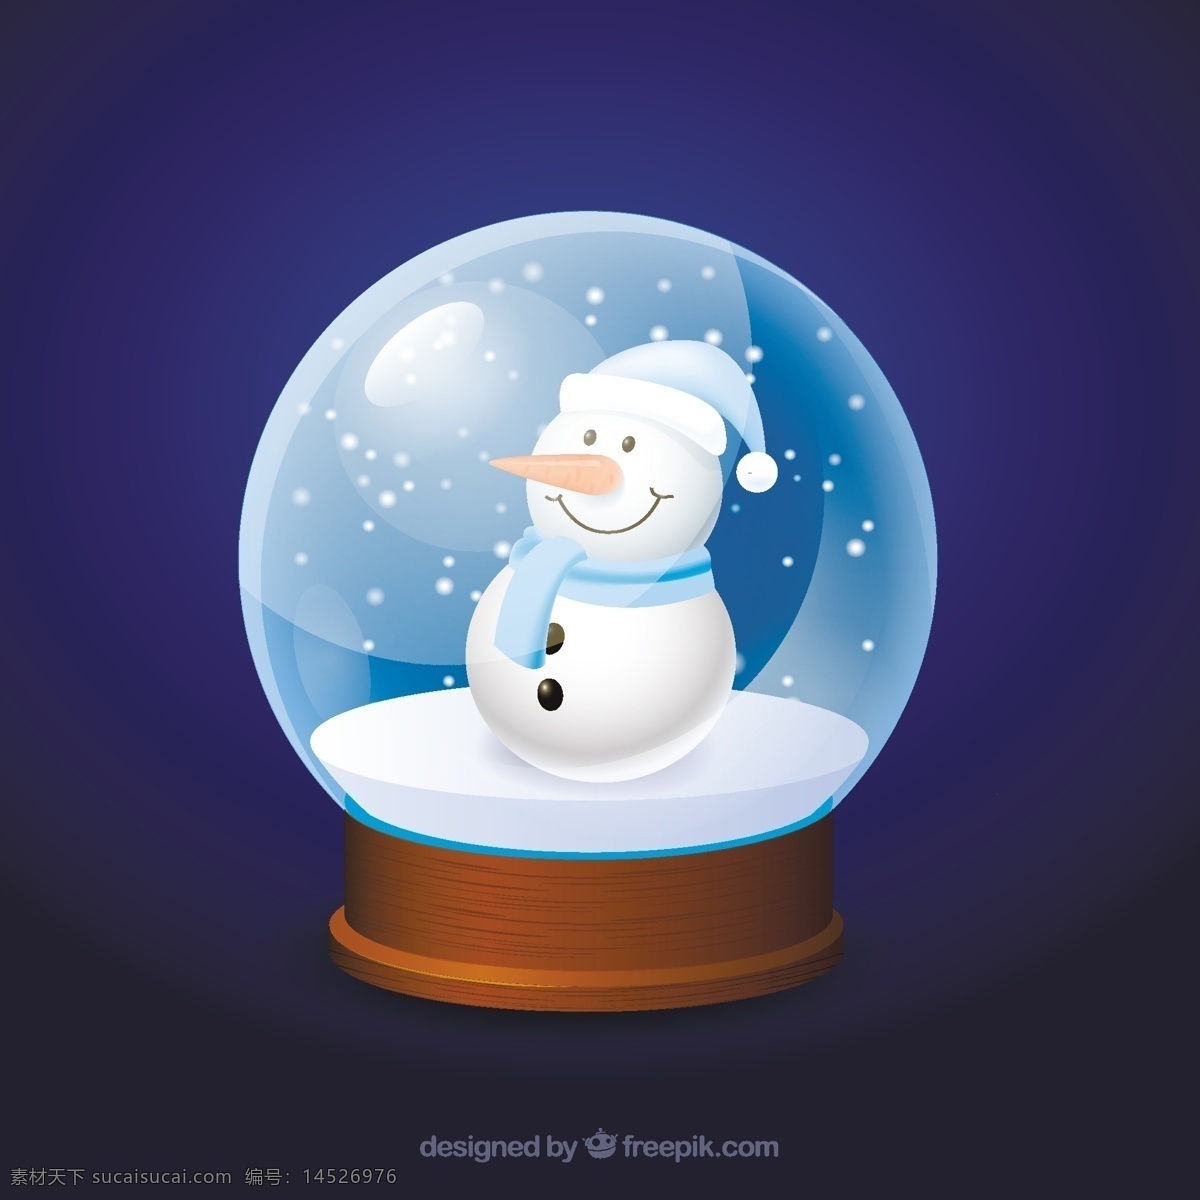 圣诞 水晶球 里 的卡 通 雪人 圣诞节 雪 圣诞节快乐 卡通 冬天 地球 快乐 庆祝的节日 堆雪人 球 节日快乐 水晶 圣诞球 季节 节日 十二月 蓝色